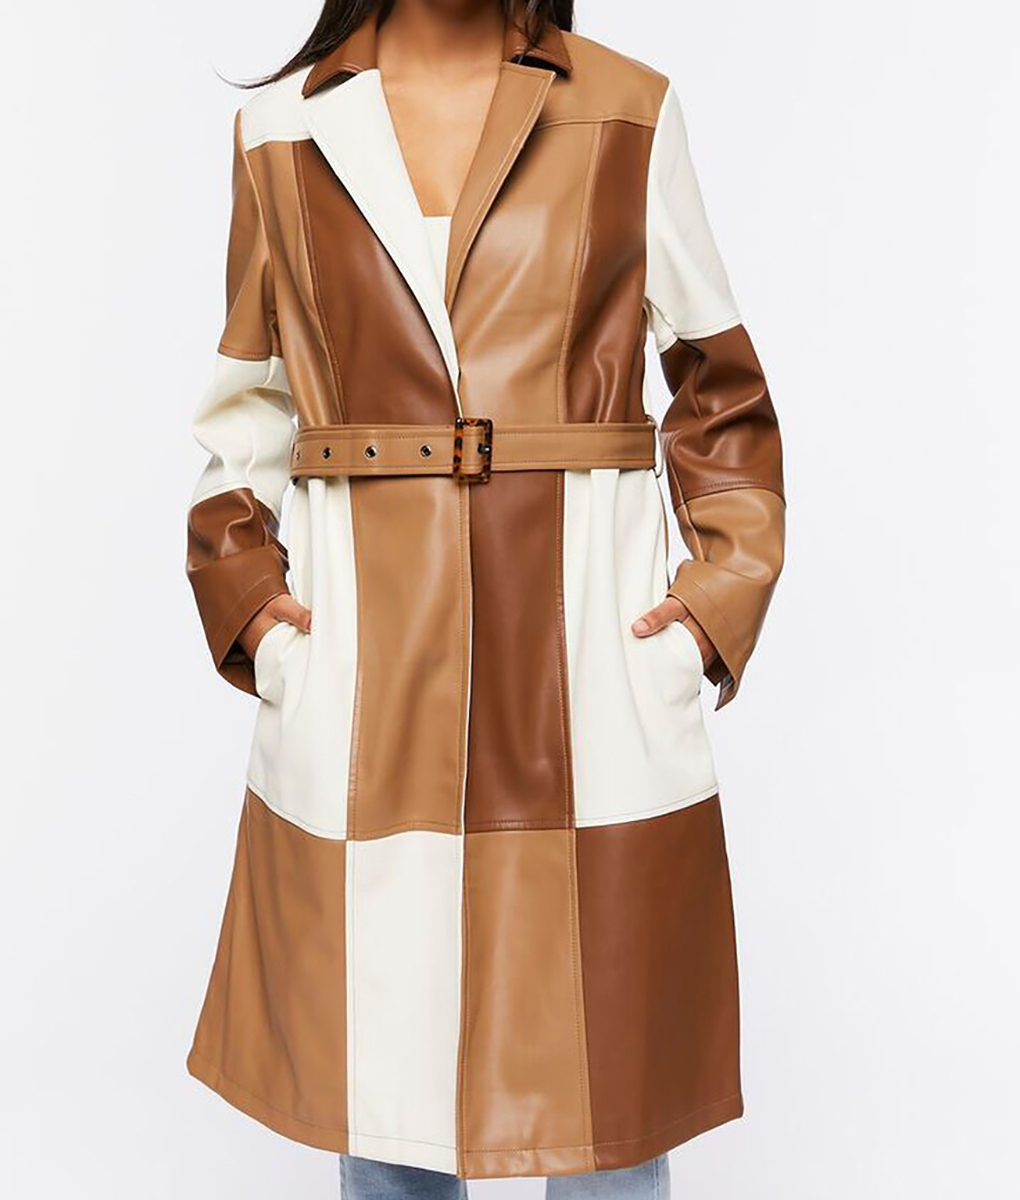 Musical Dara Renee Colorblock Leather Coat (6)